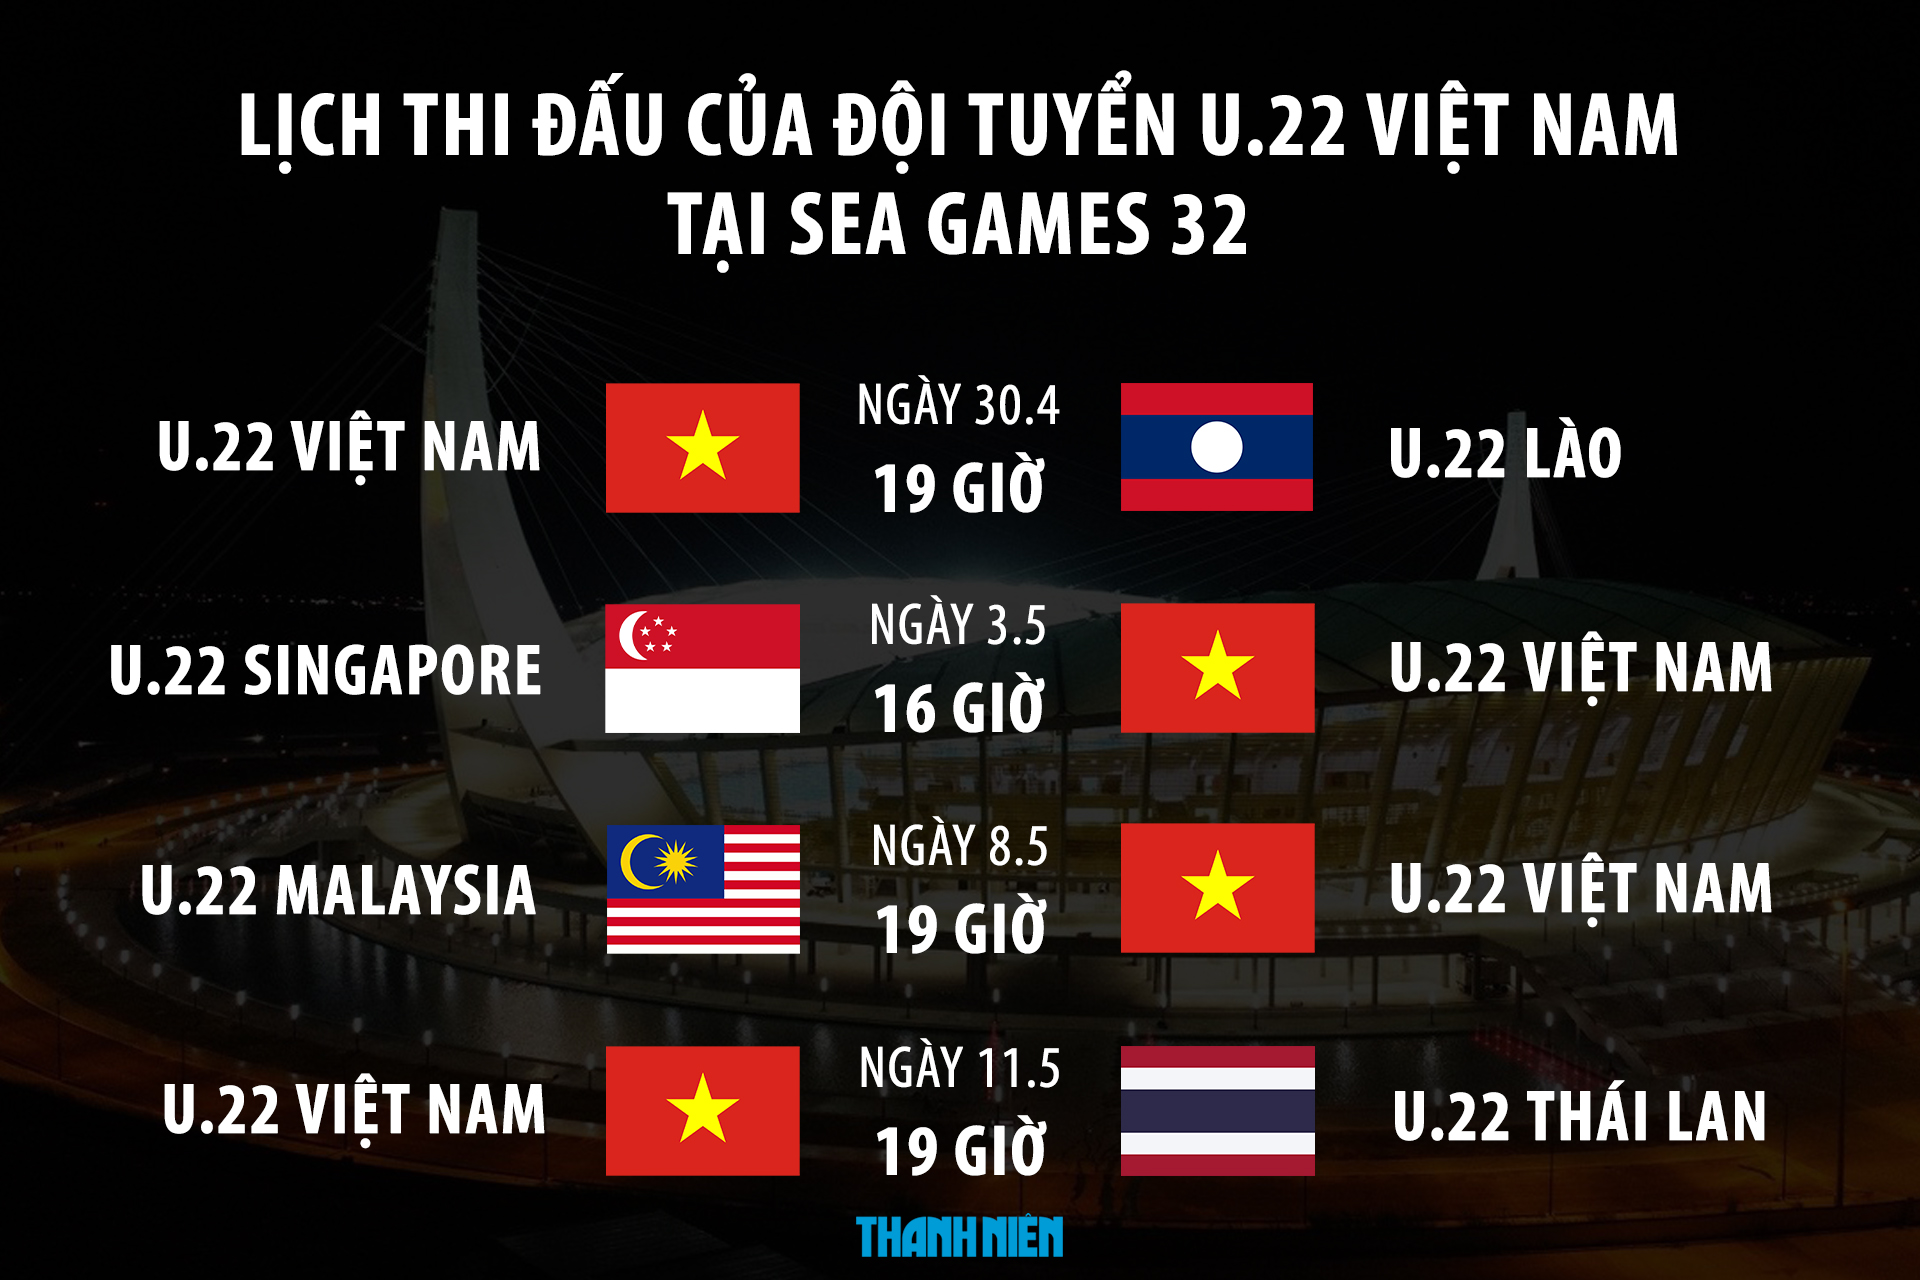 Lịch thi đấu U.22 Việt Nam và bóng đá nam tại SEA Games 32 - Ảnh 1.